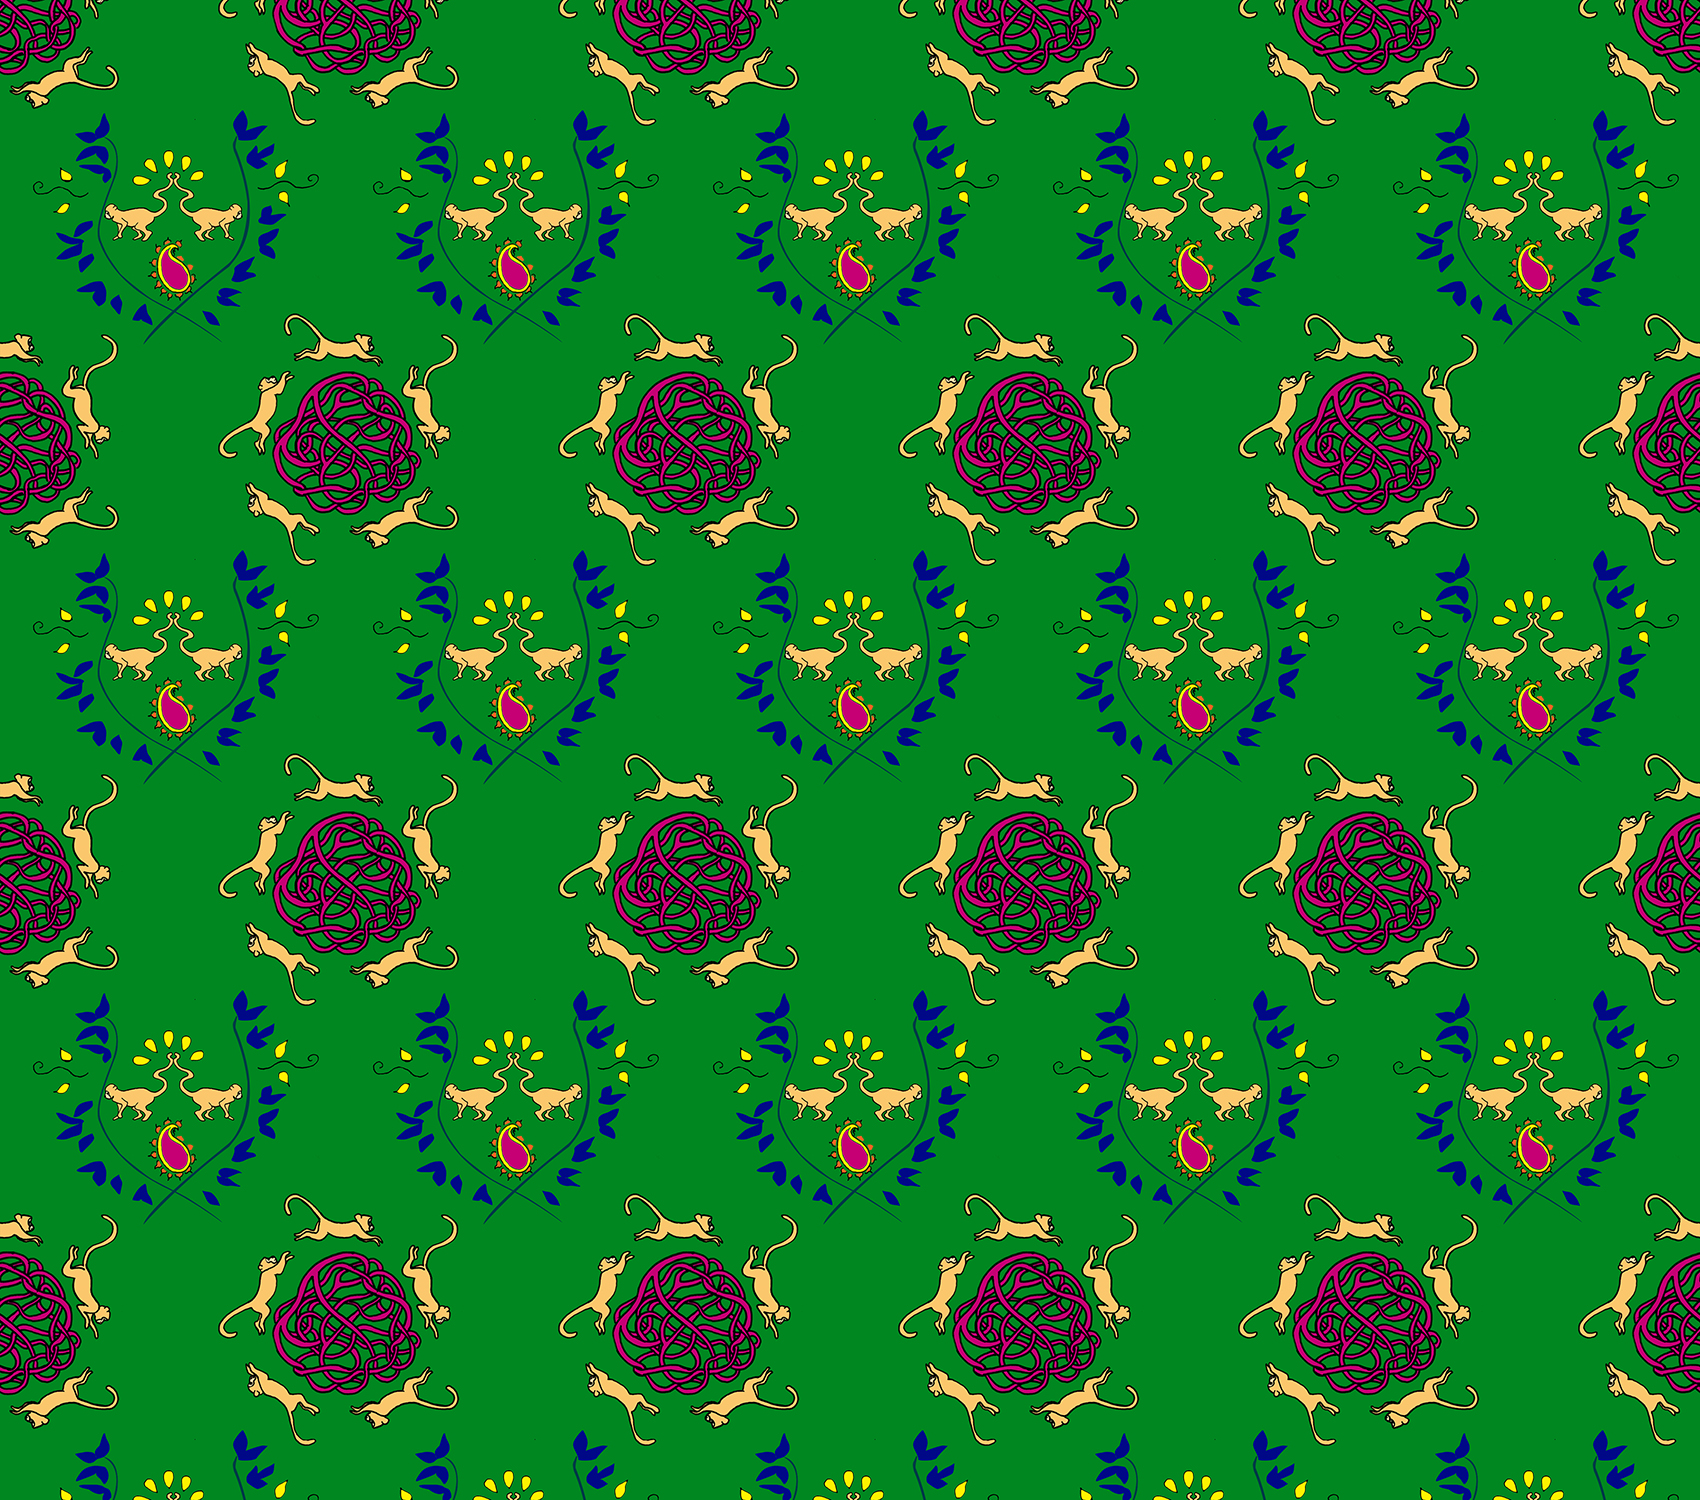 monkey pattern green.jpg